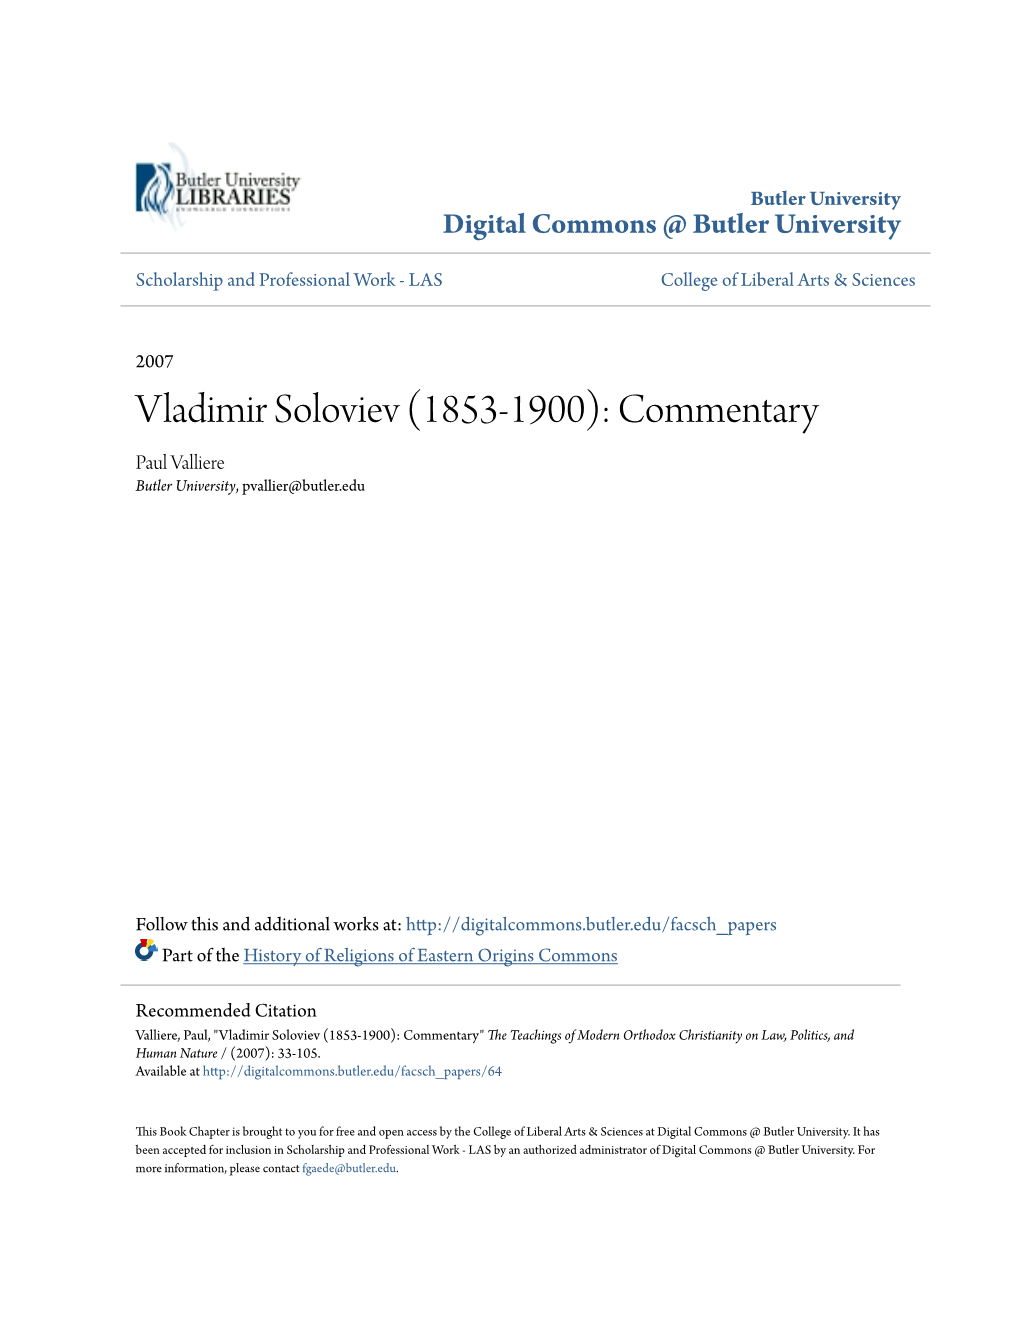 Vladimir Soloviev (1853-1900): Commentary Paul Valliere Butler University, Pvallier@Butler.Edu